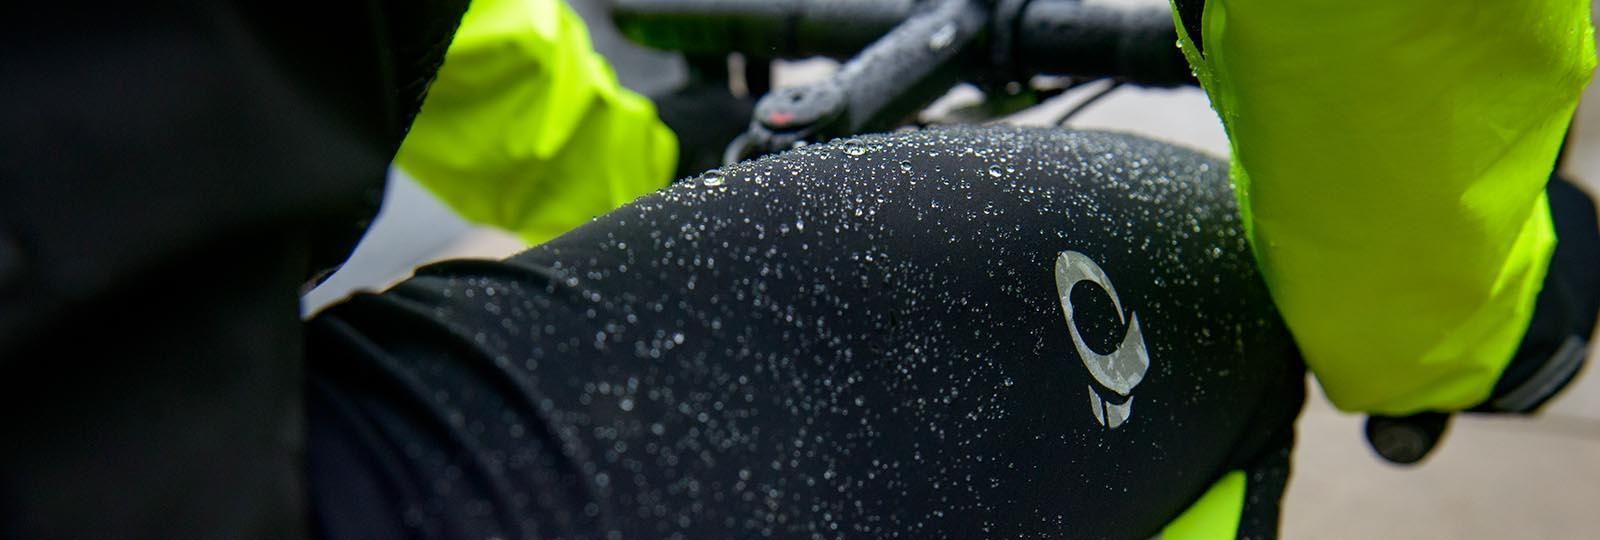 Pearl Izumi talvihousut Amfib ilman pehmustetta Pearl izumi trikoot tarjoavat erinomaista suojaa saan ollessa